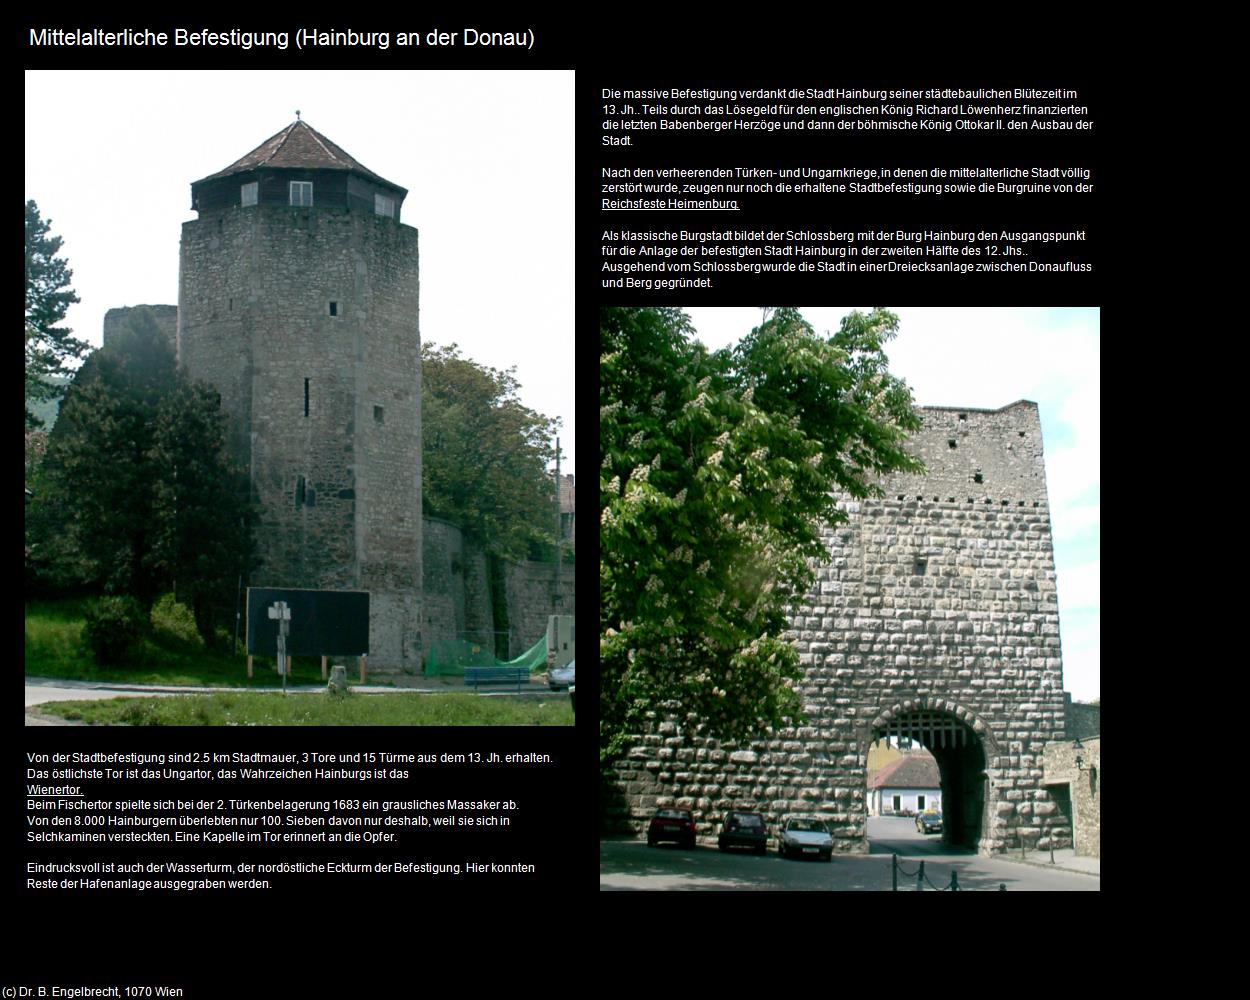 Mittelalterliche Befestigung (Hainburg an der Donau) in Kulturatlas-NIEDERÖSTERREICH(c)B.Engelbrecht